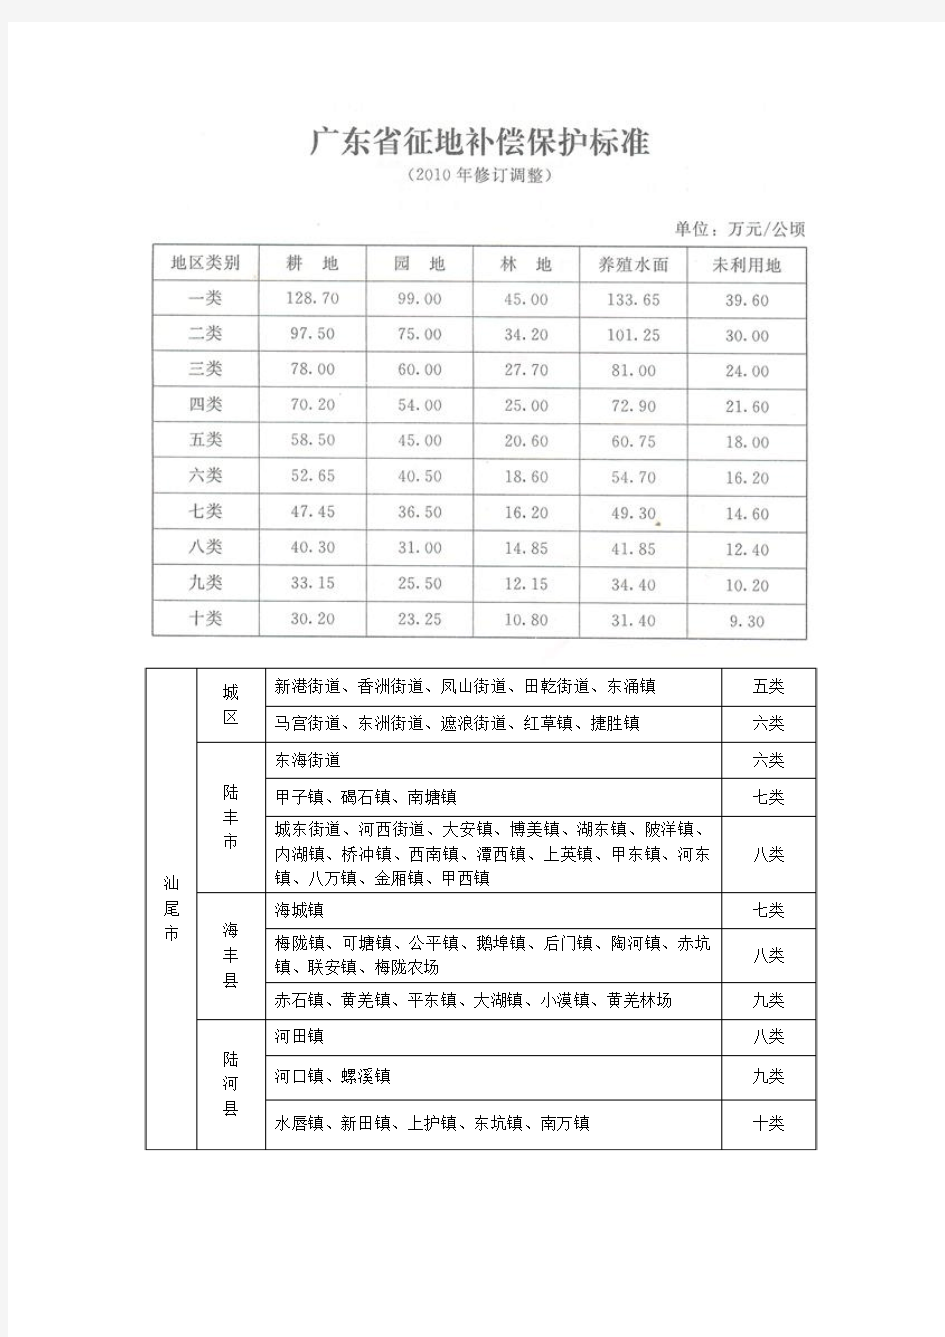 2010  广东省征地补偿保护标准及地区分类表